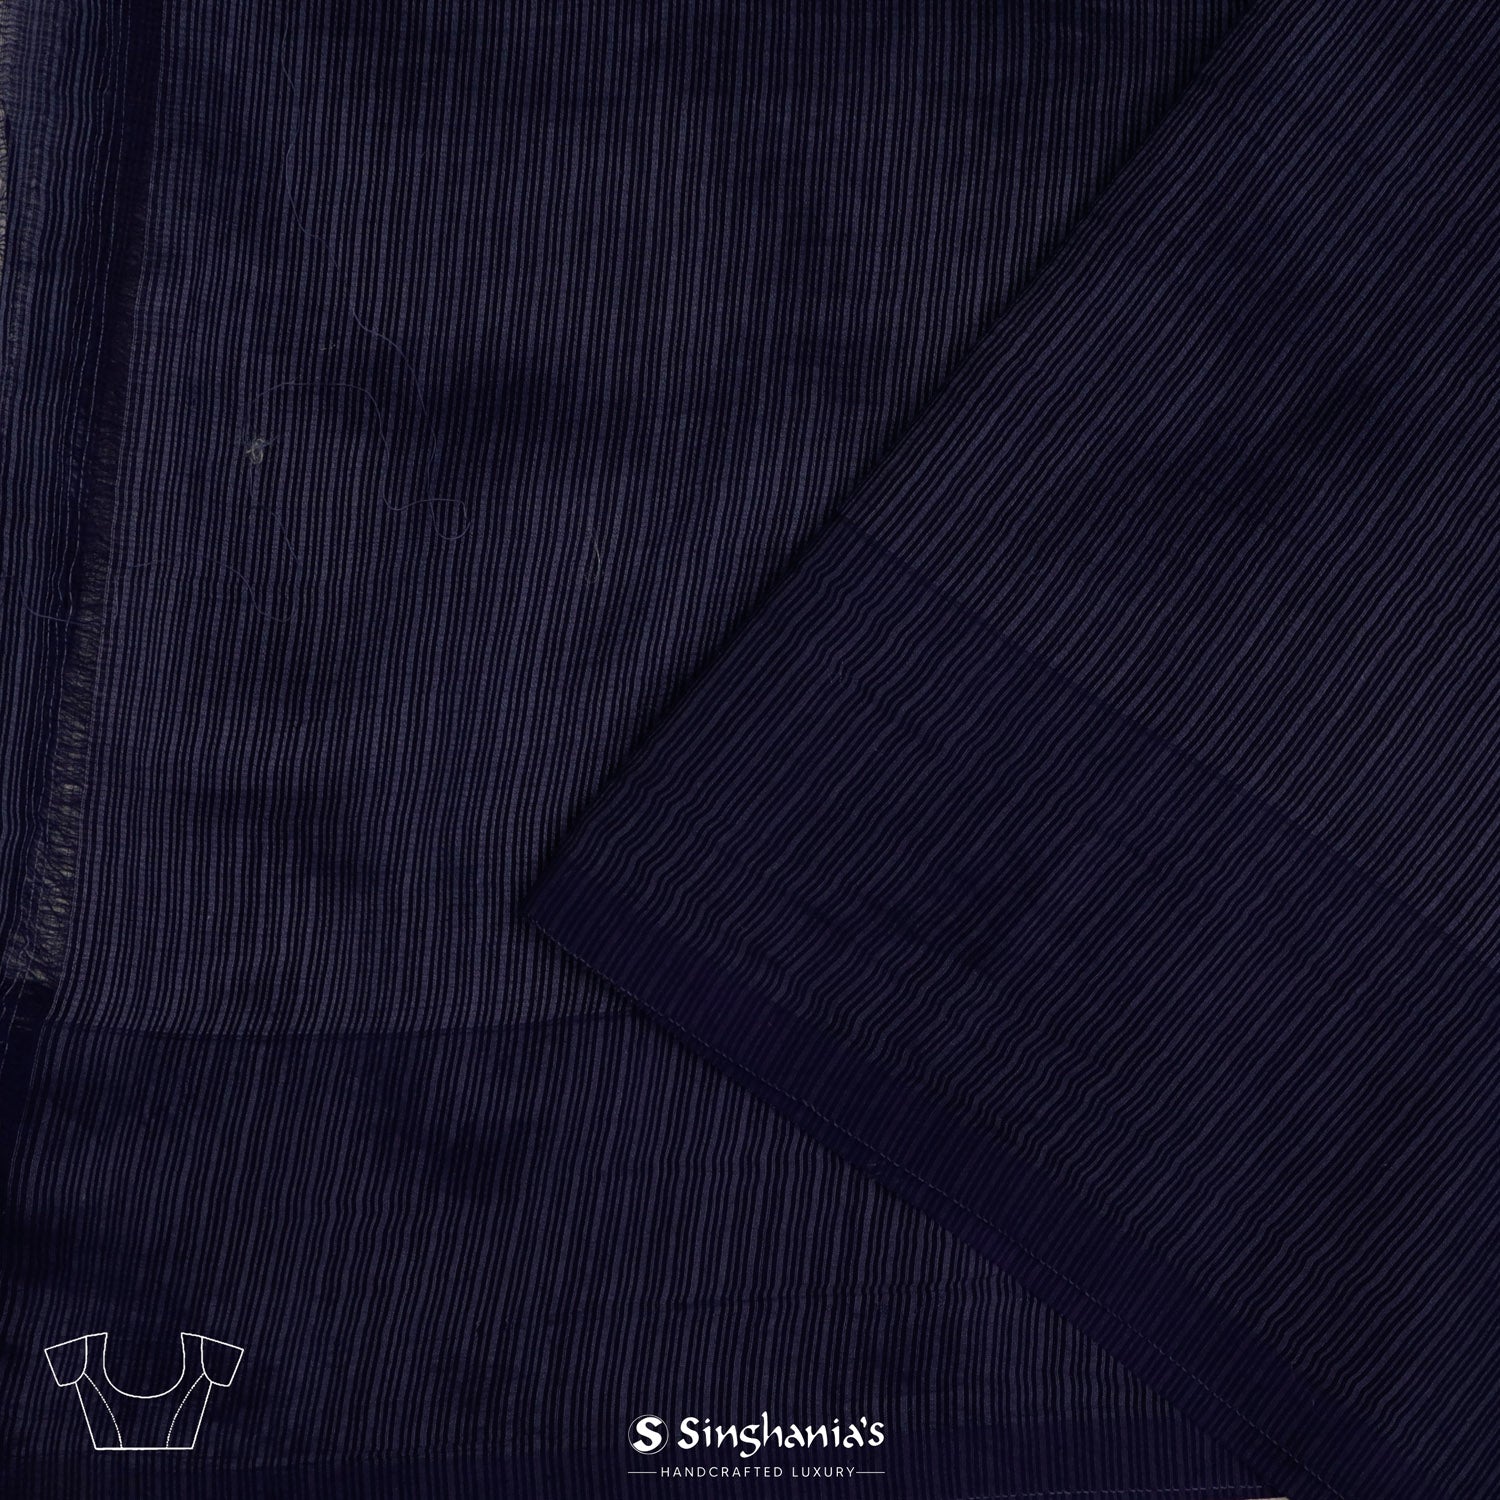 Dark Navy Blue Kota Saree With Banarasi Weaving